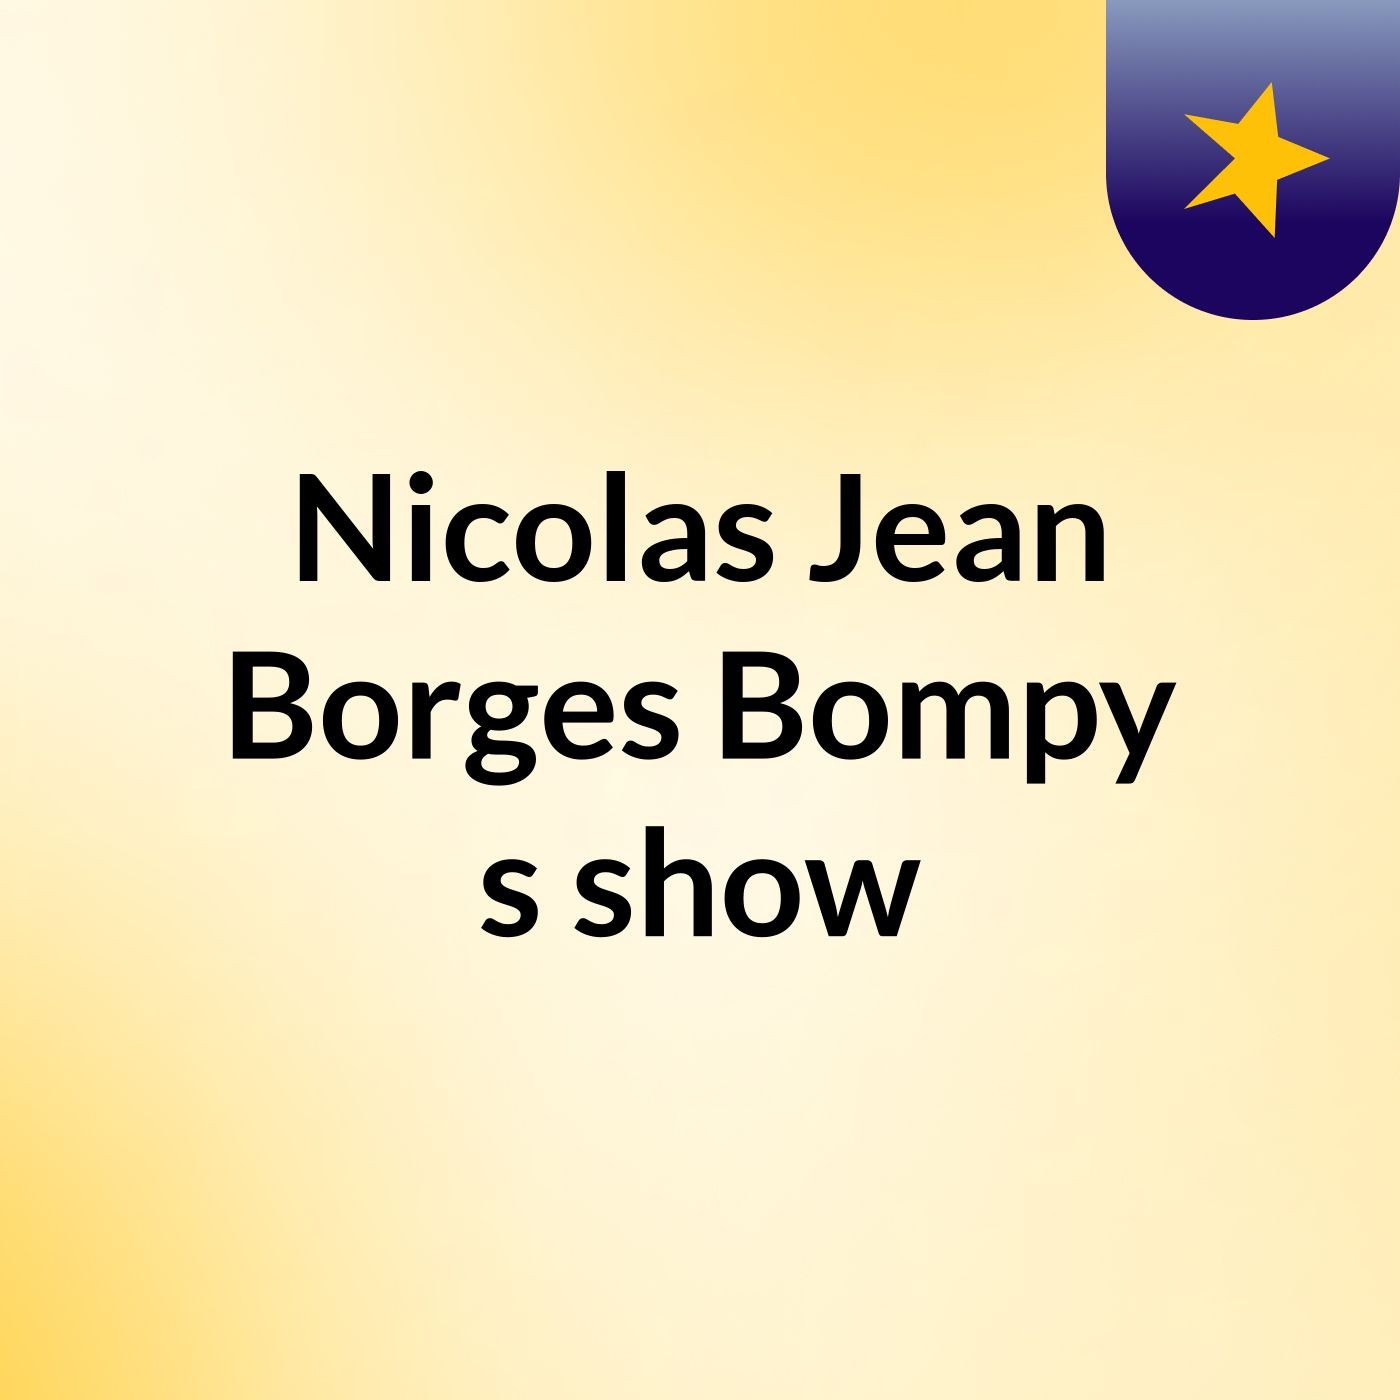 Nicolas Jean Borges Bompy's show